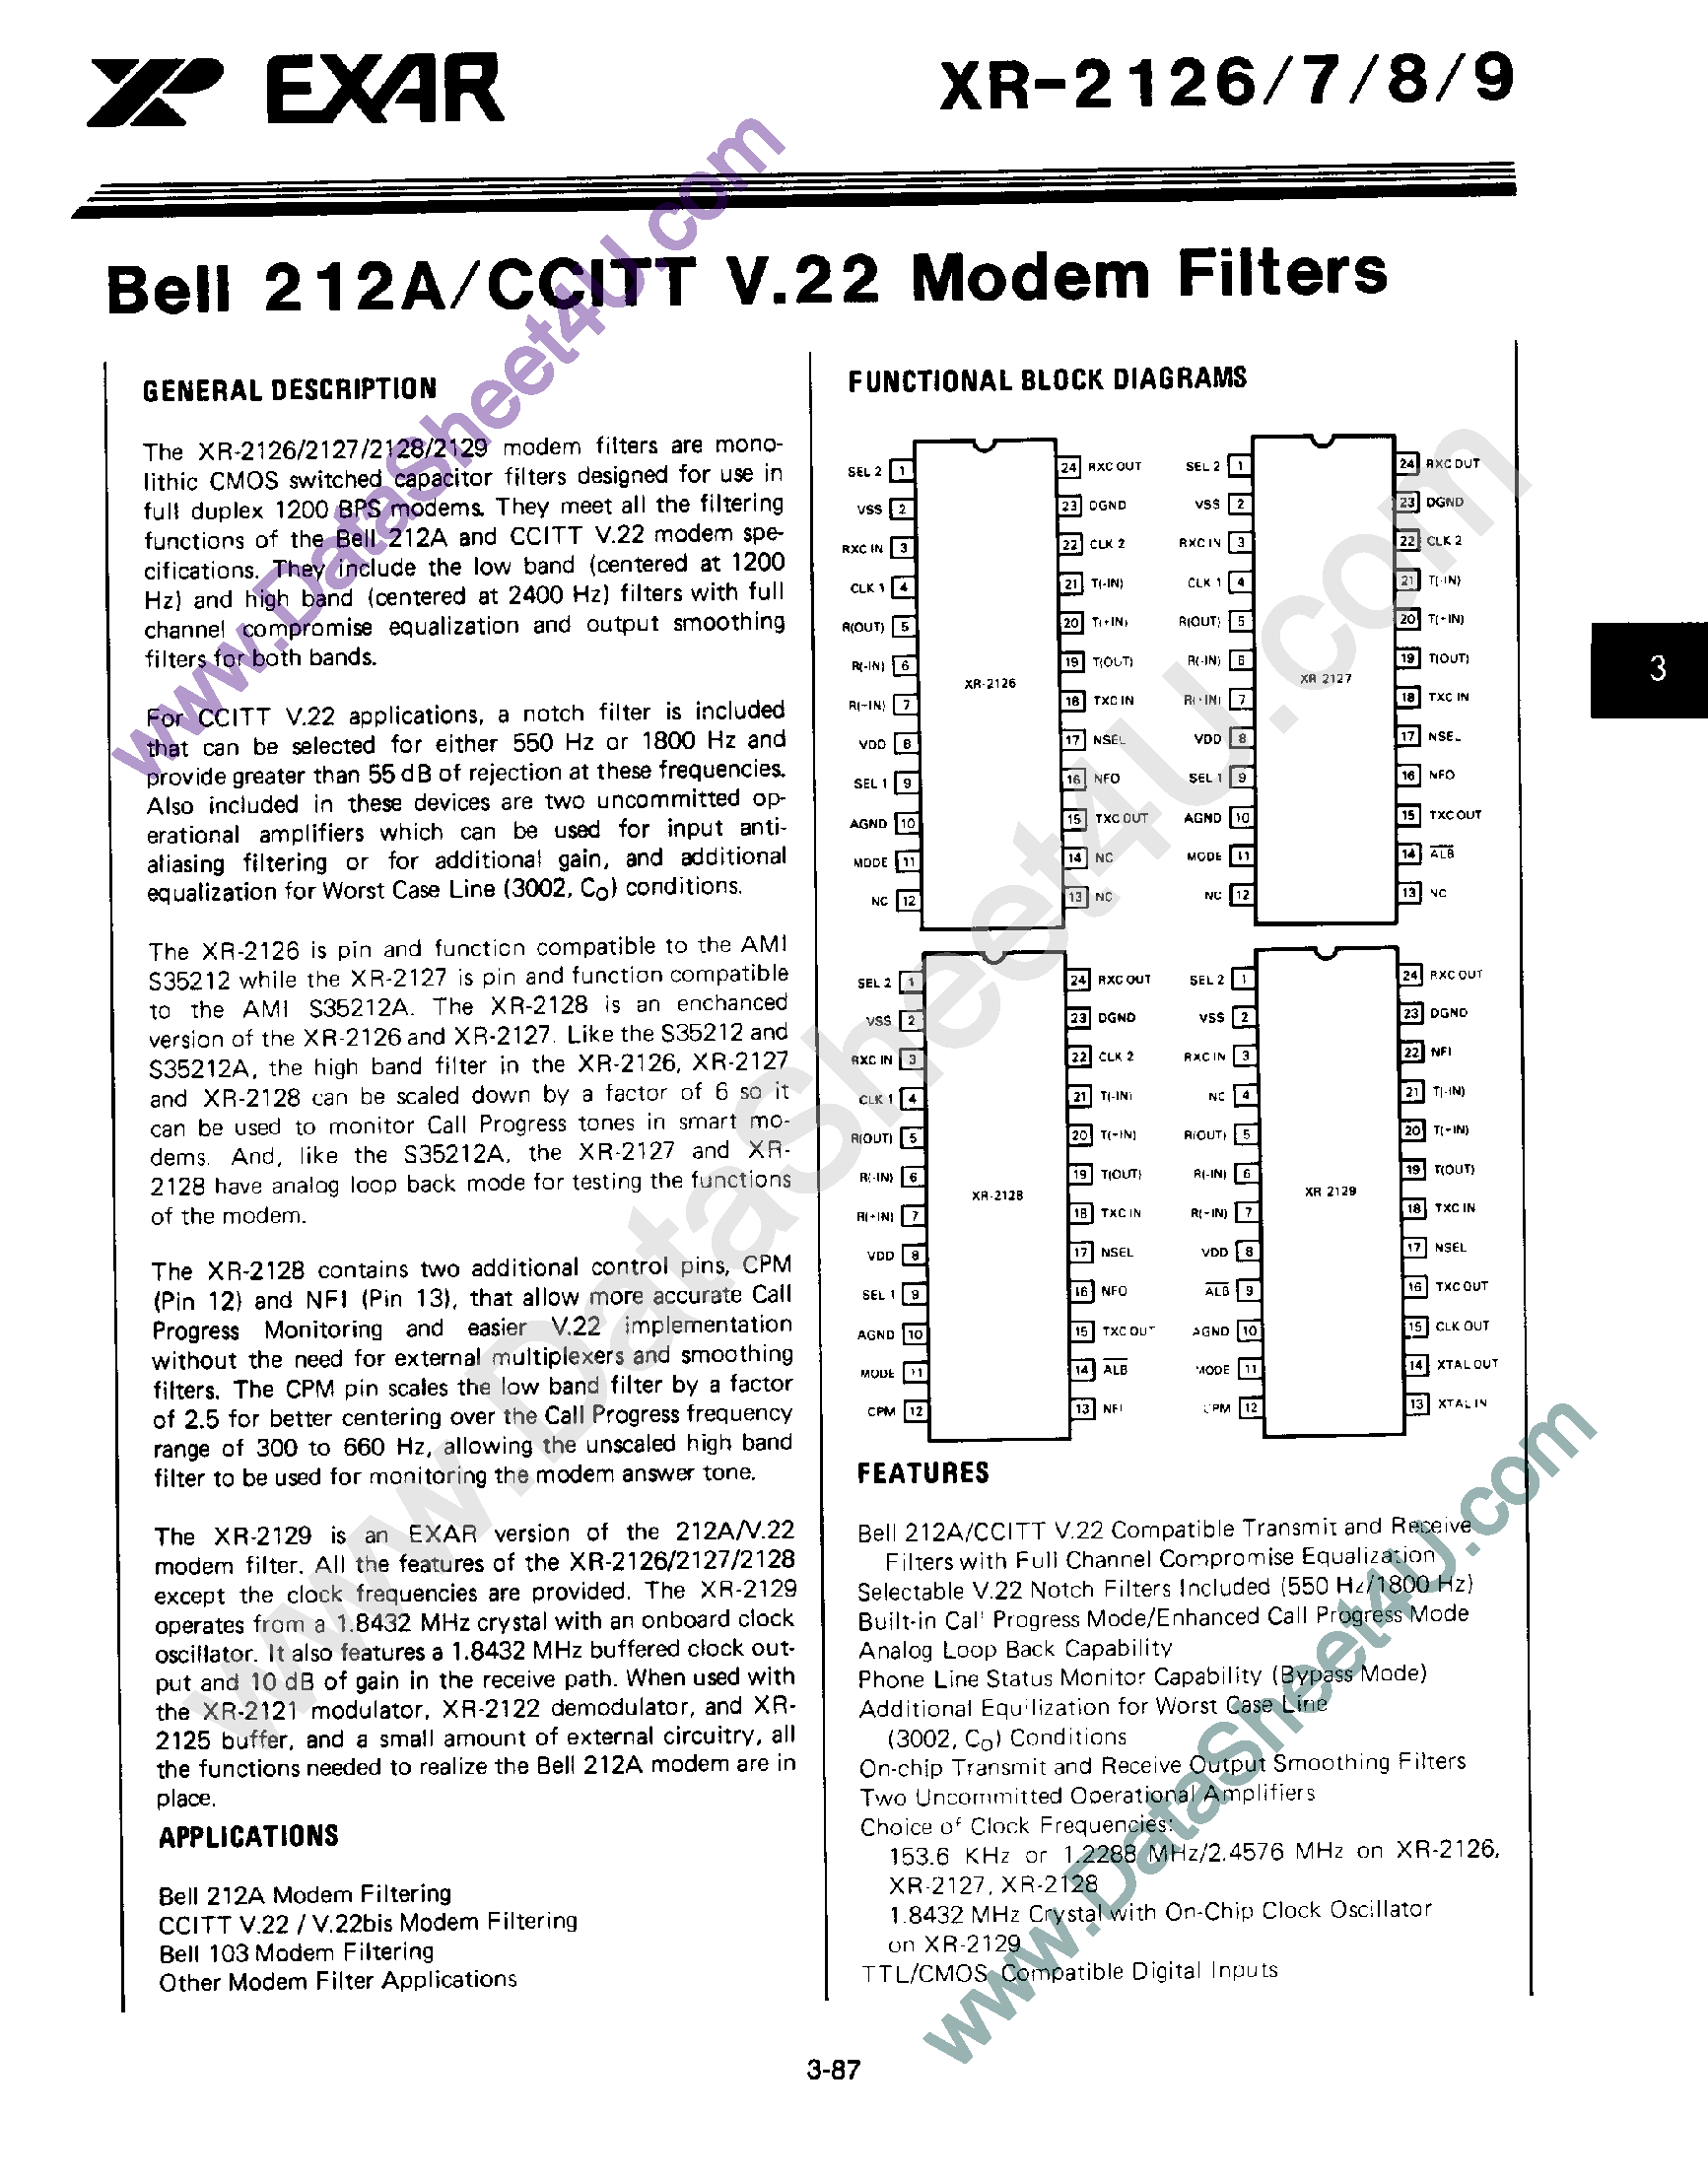 Datasheet XR2128 - Bell 212A / CCITT V.22 Modem Filters page 1